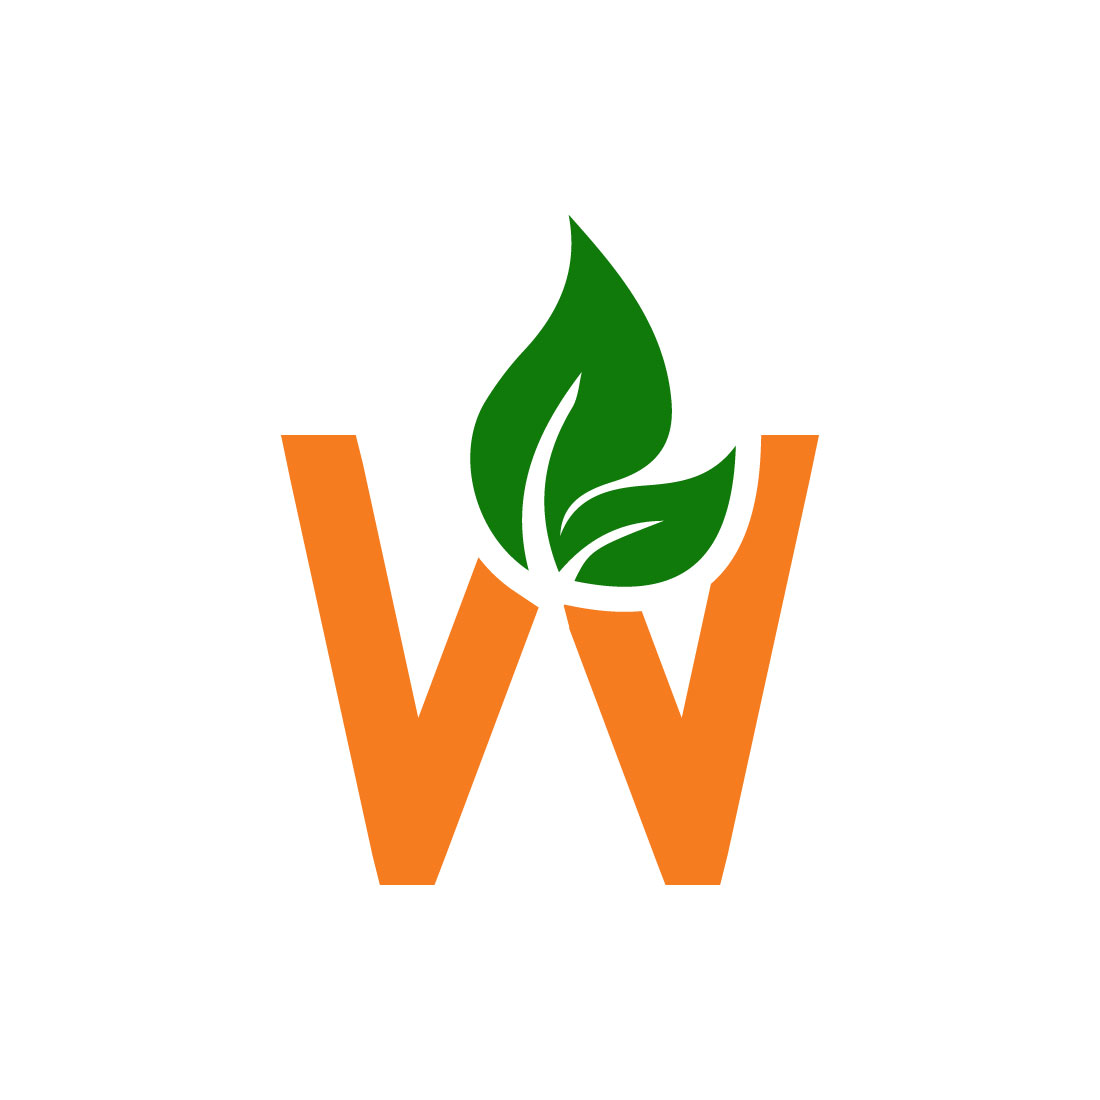 Free W organic logo preview image.